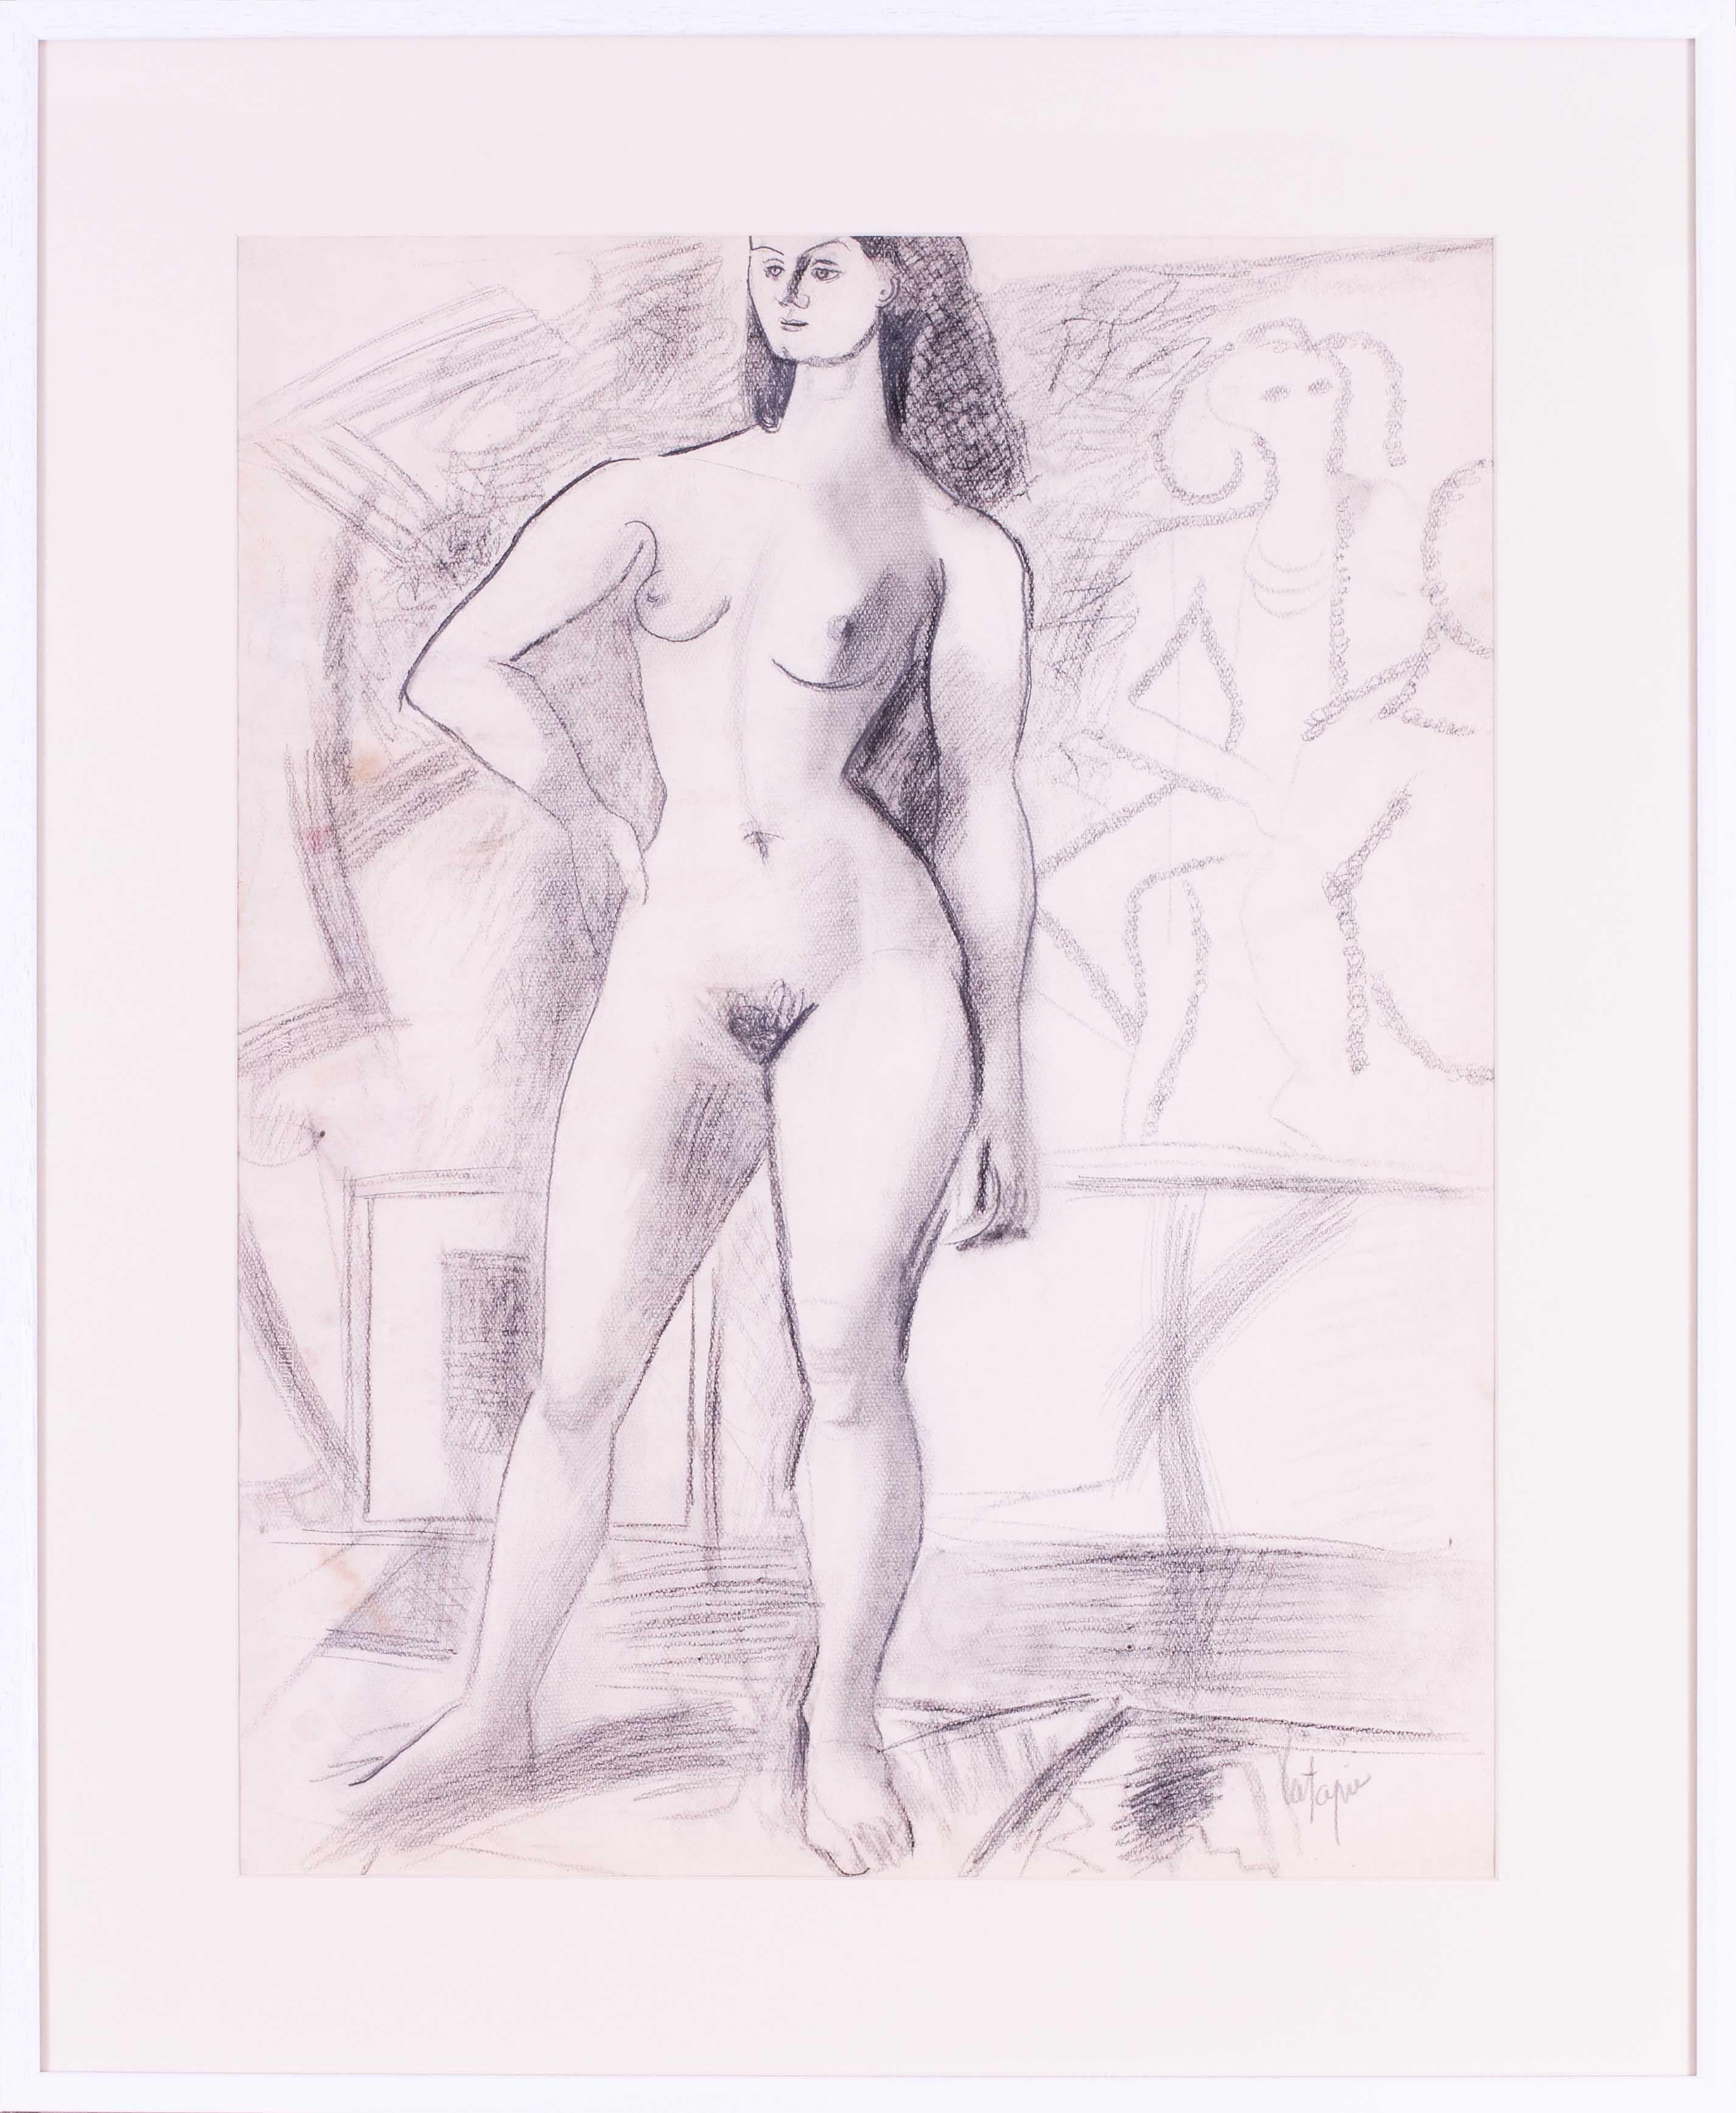 Dessin de nu post-impressionniste français par l'artiste français du 20e siècle Latapie